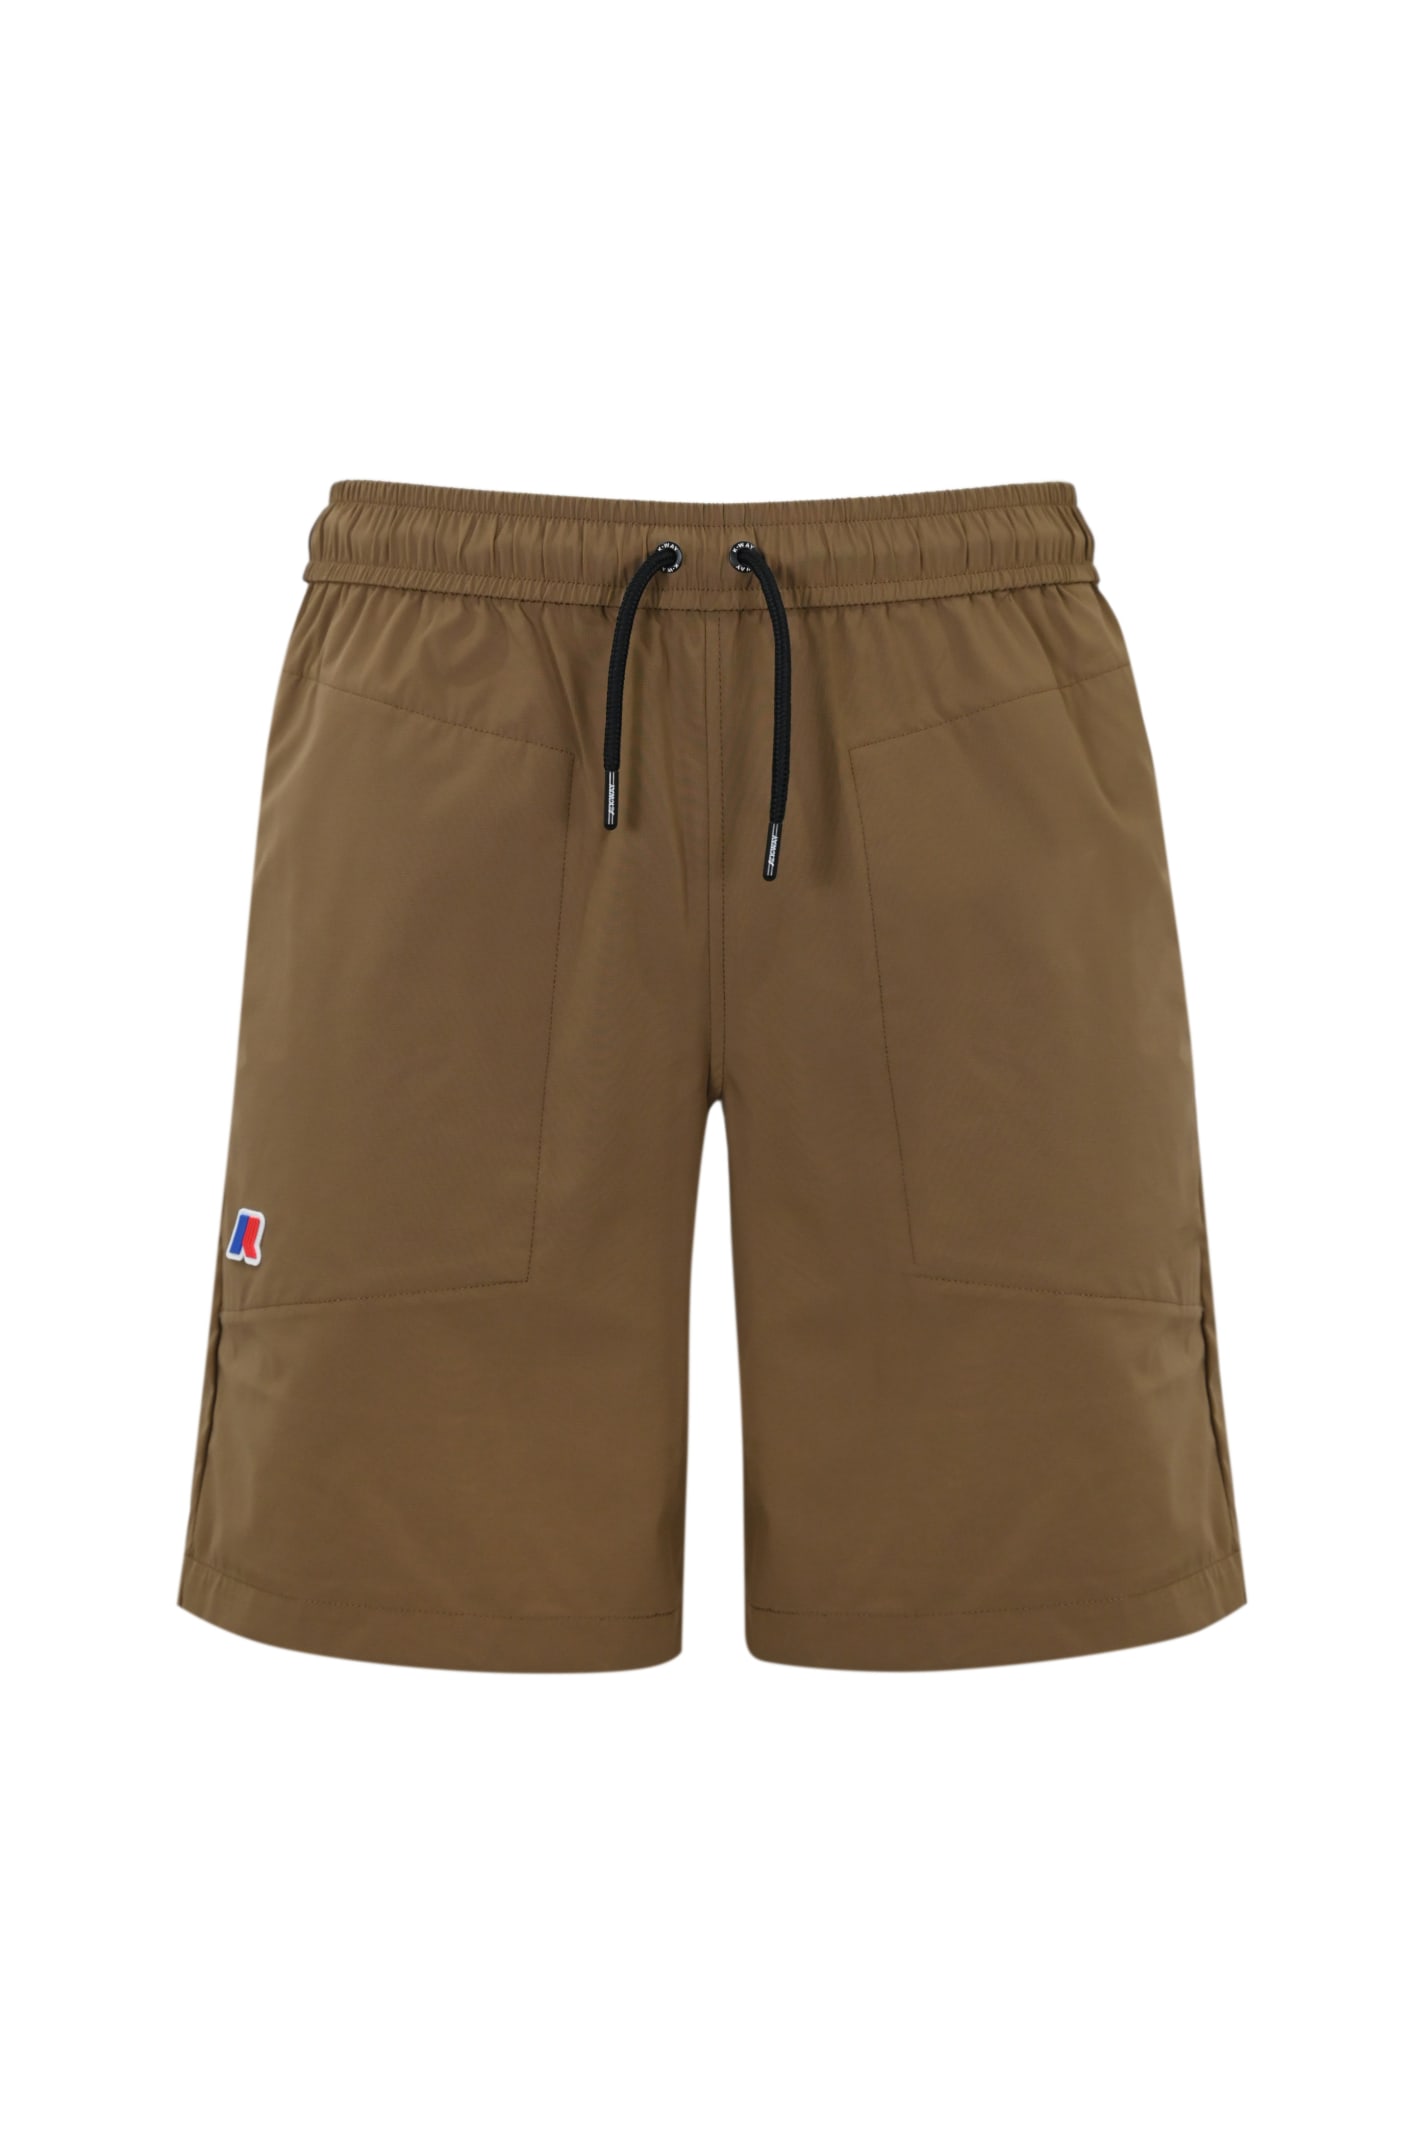 K-way Nesty Travel Nylon Shorts In Brown Corda